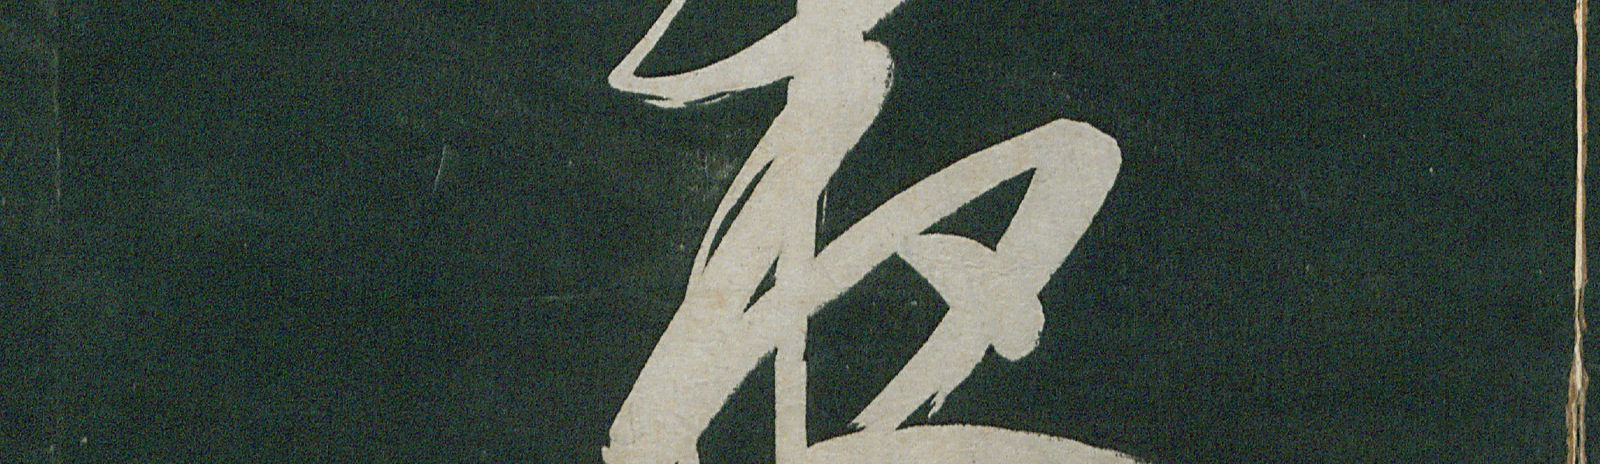 Фоновое изображение Образцы каллиграфии кисти императора Канси